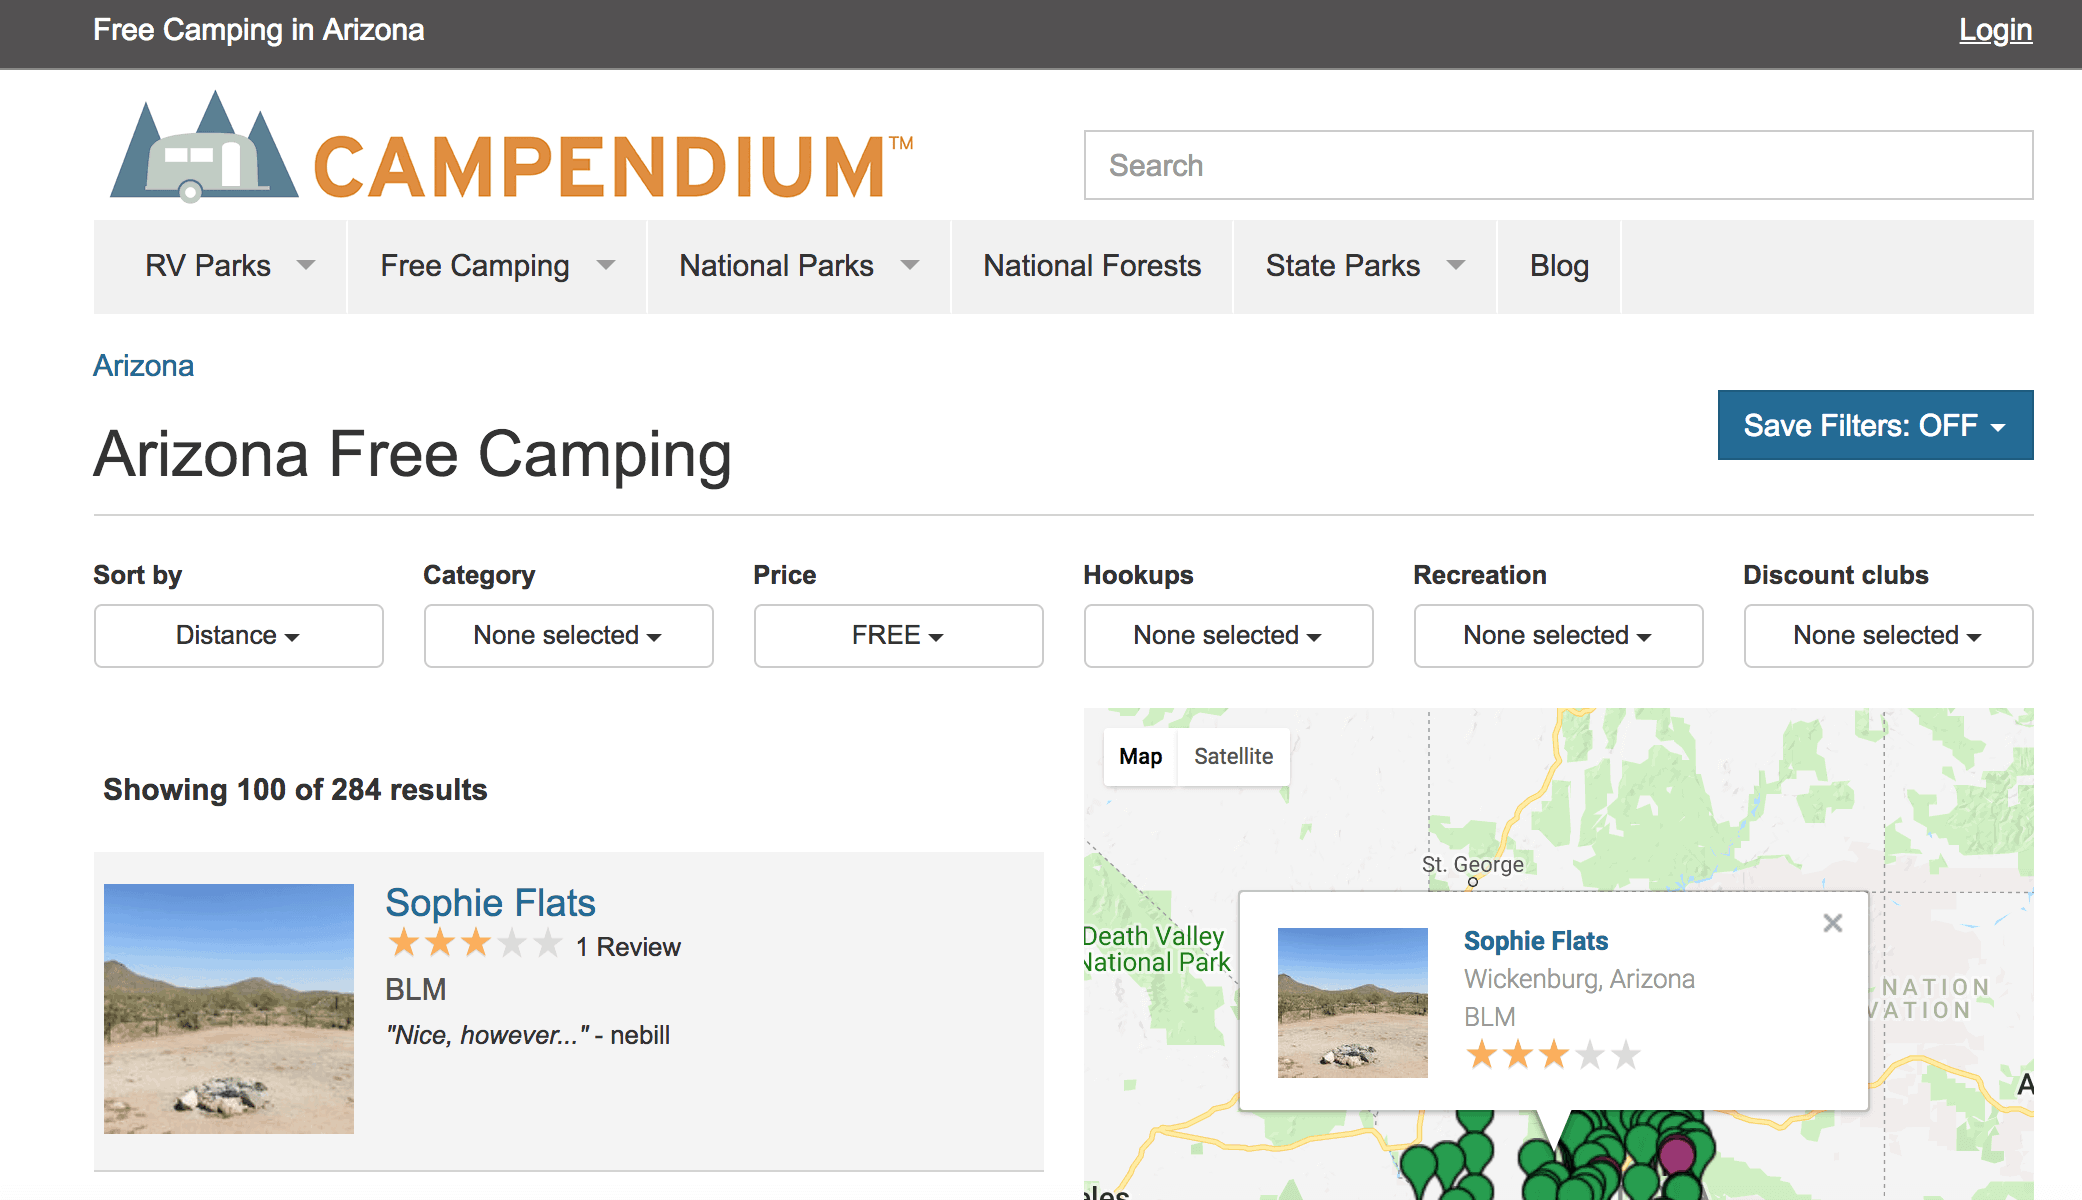 Free camping in Arizona